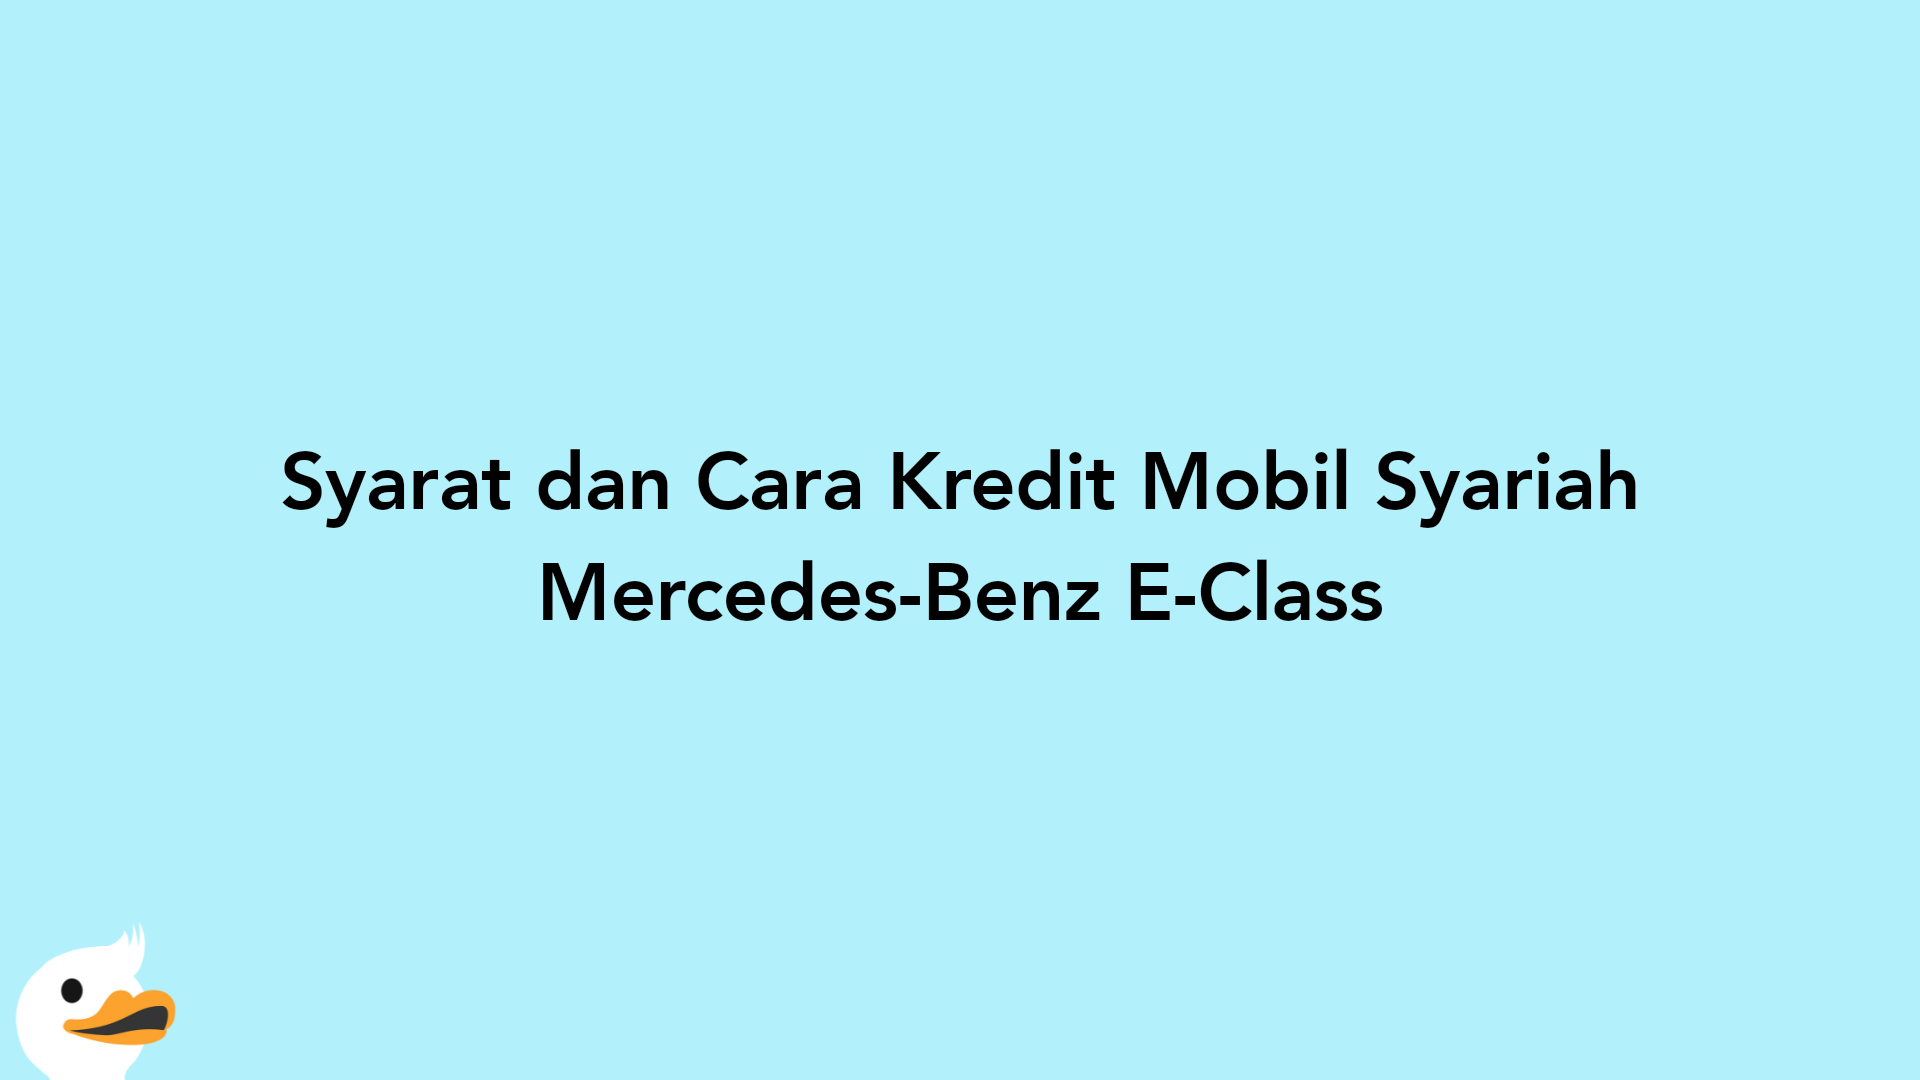 Syarat dan Cara Kredit Mobil Syariah Mercedes-Benz E-Class